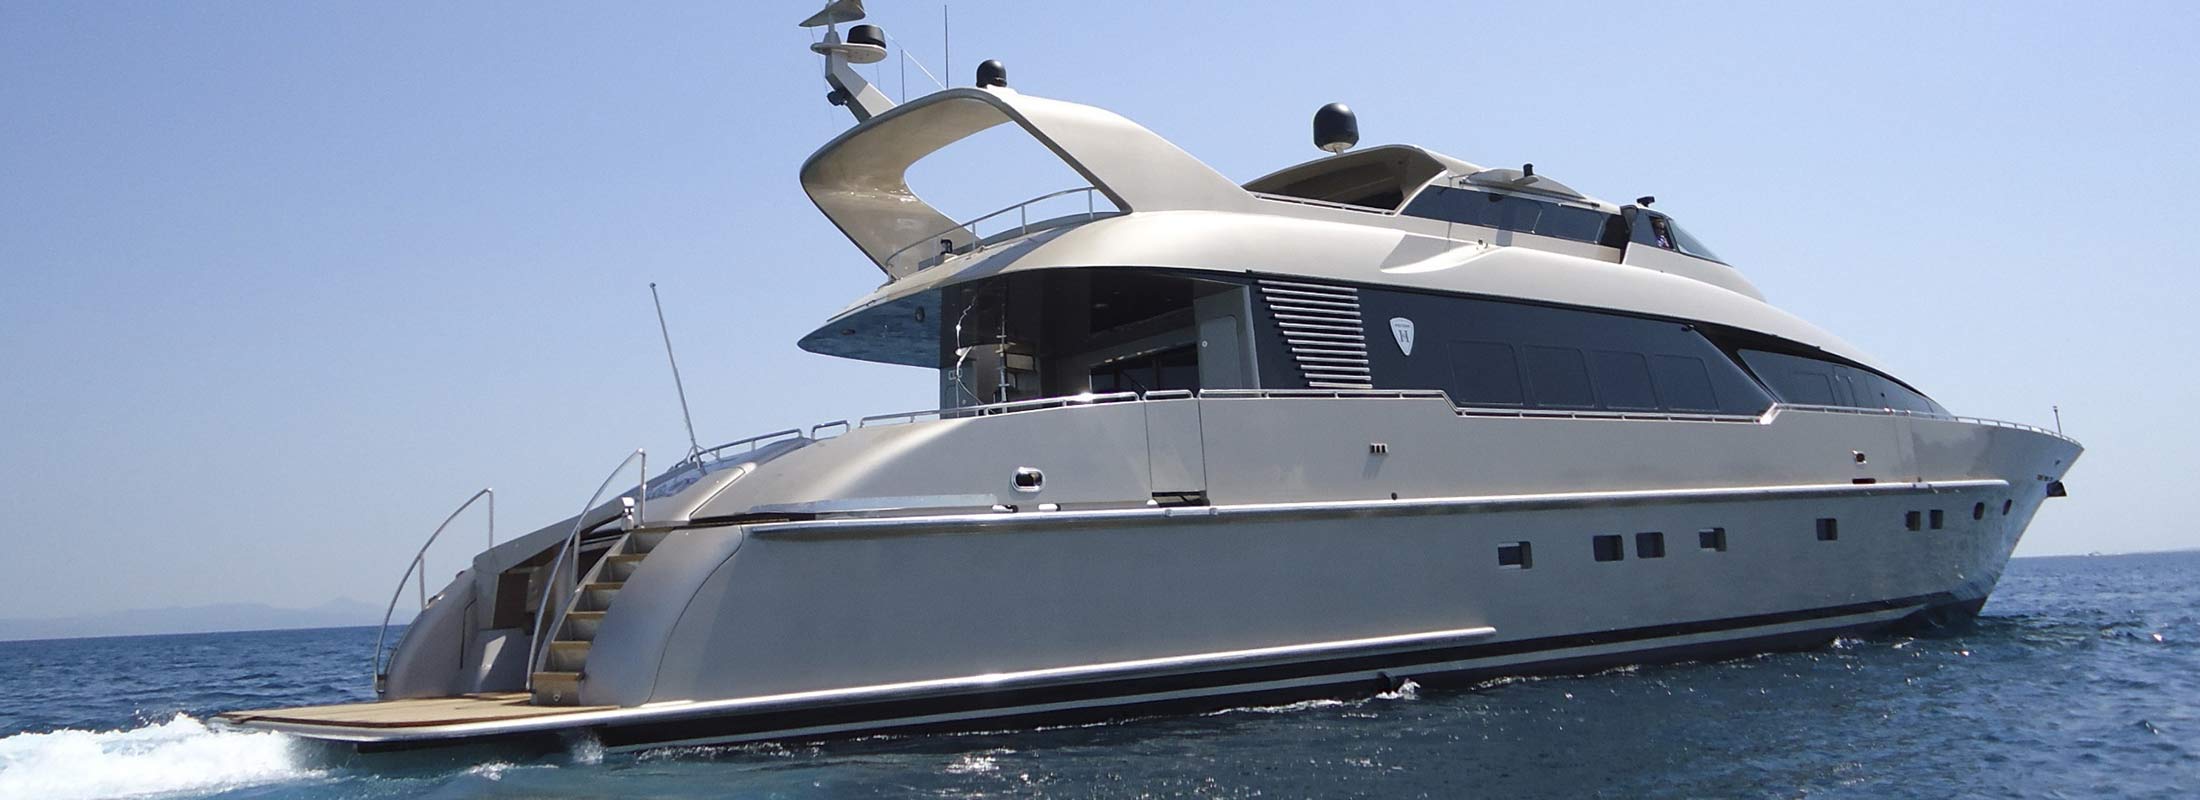 Daloli Motor Yacht for Charter Mediterranean slider 2